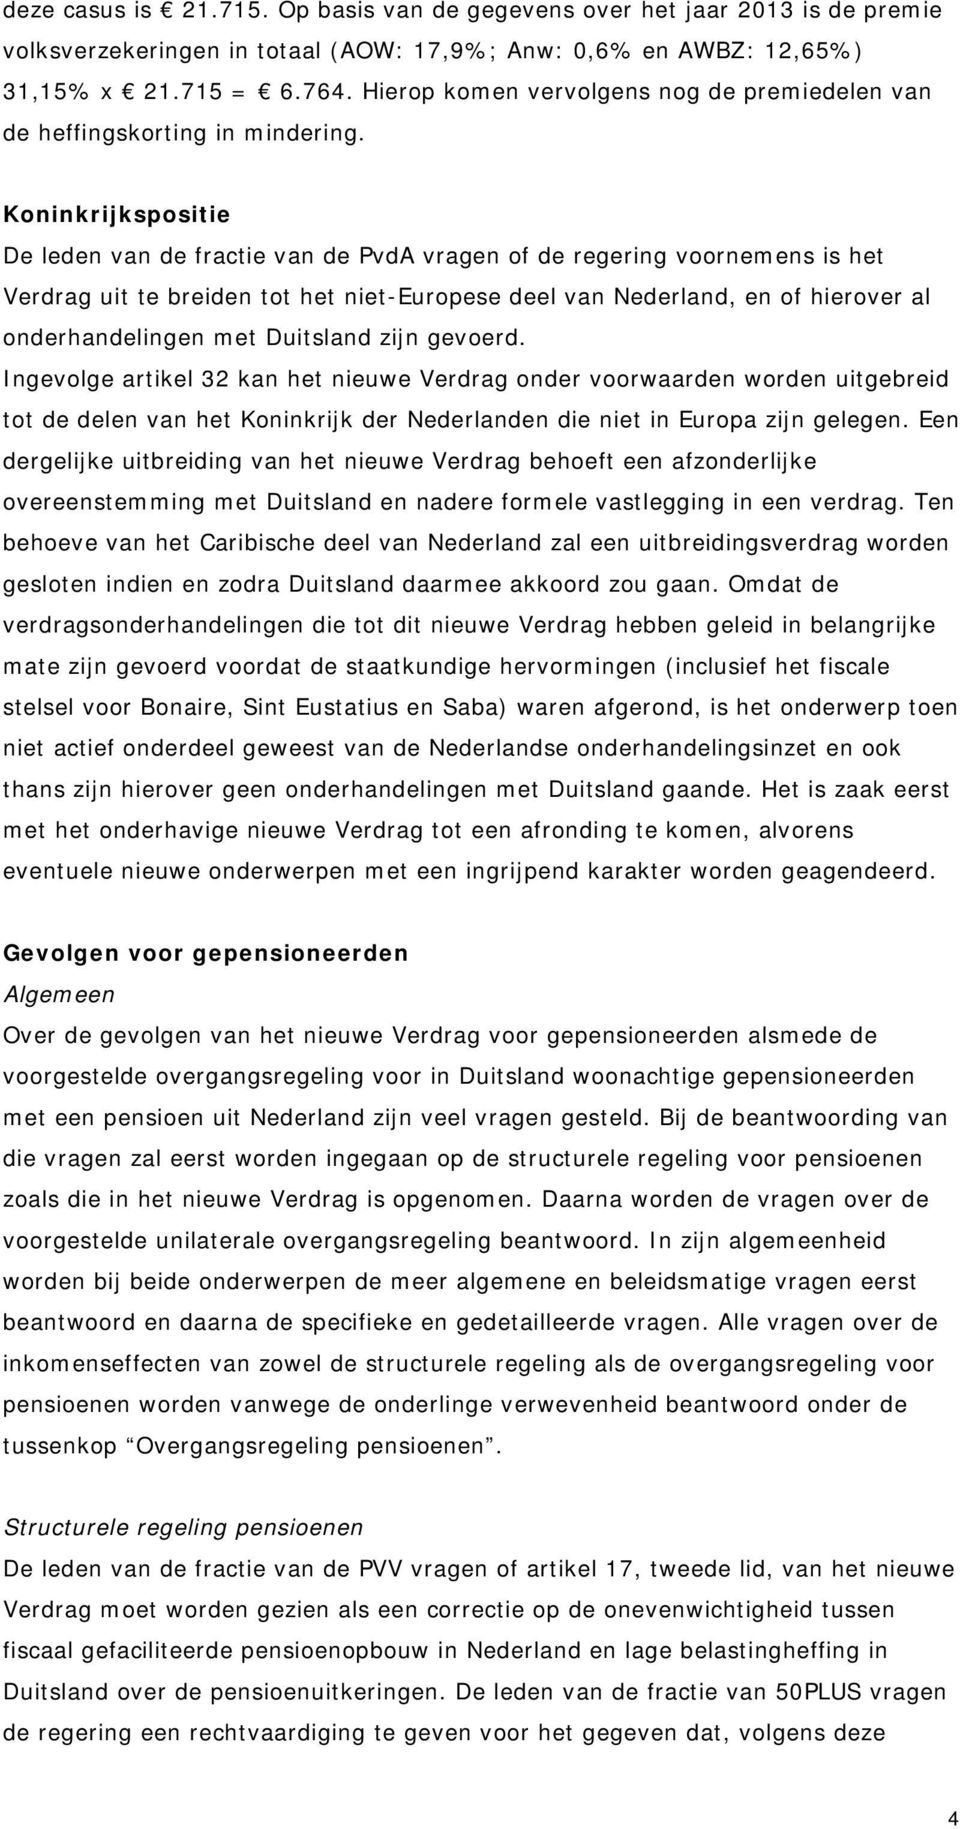 Koninkrijkspositie De leden van de fractie van de PvdA vragen of de regering voornemens is het Verdrag uit te breiden tot het niet-europese deel van Nederland, en of hierover al onderhandelingen met